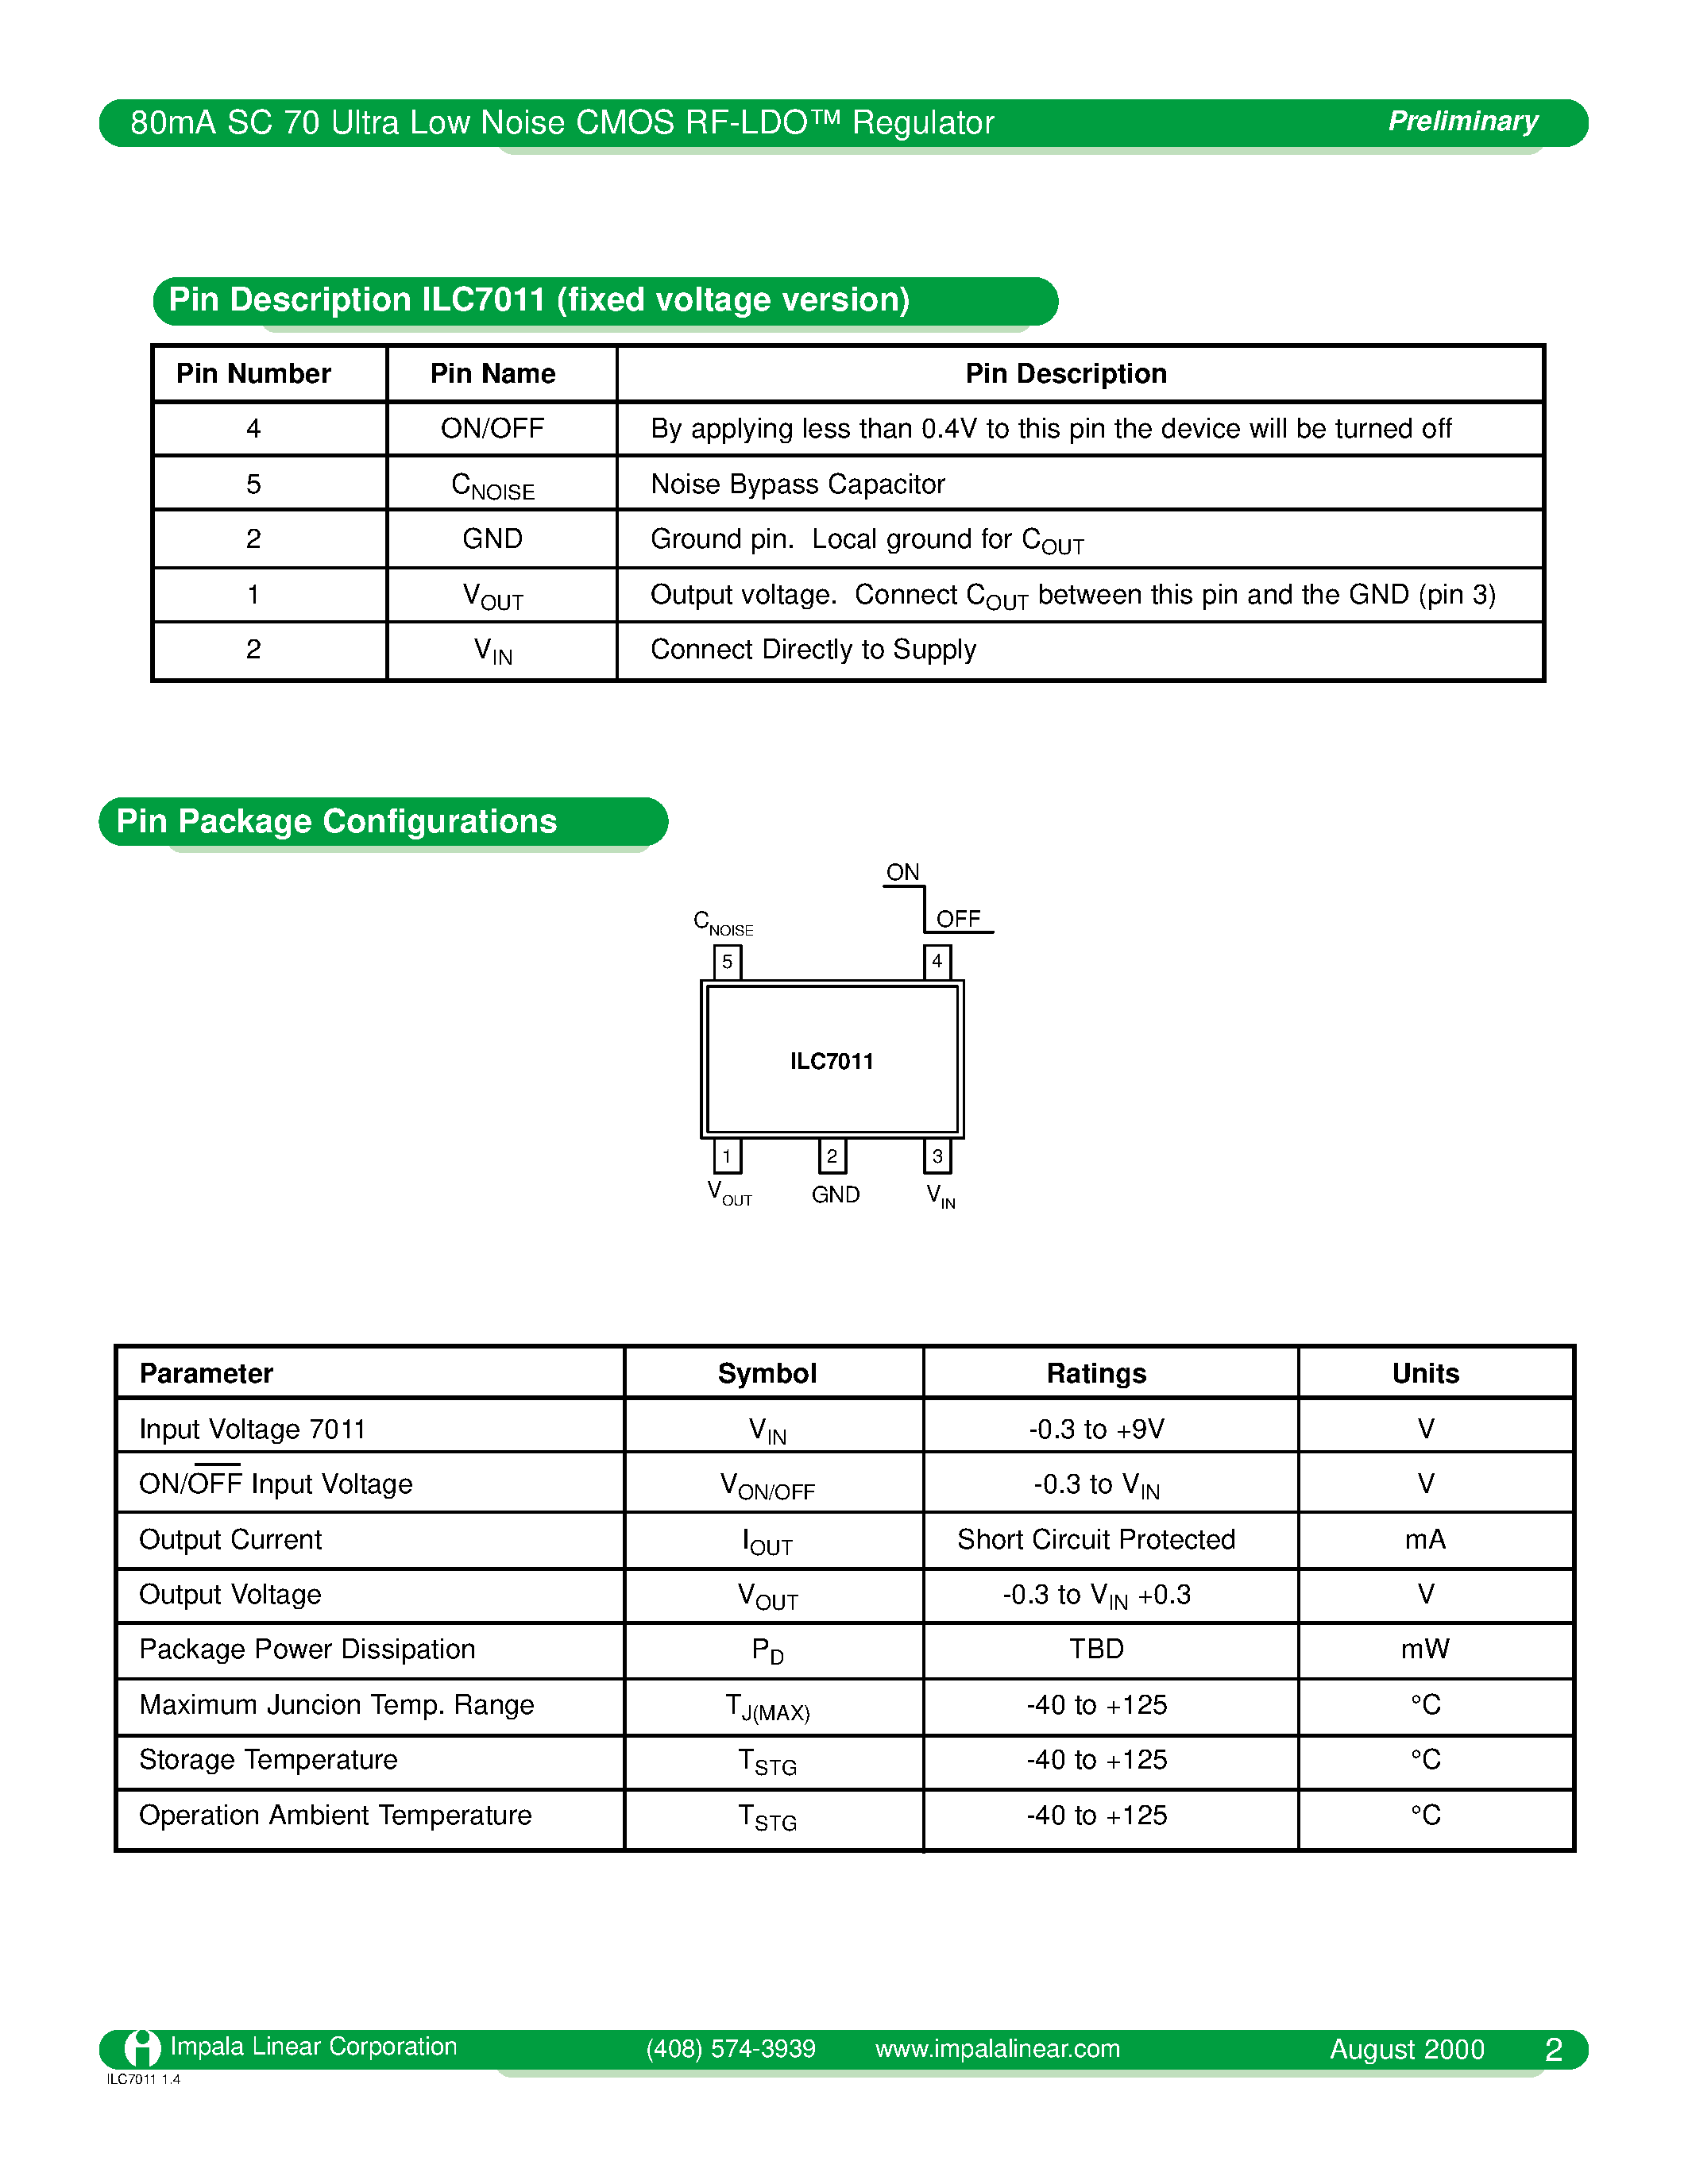 Даташит ILC7011C5-50 - 80mA SC70 Ultra Low Noise CMOS RF-LDO Regulator страница 2